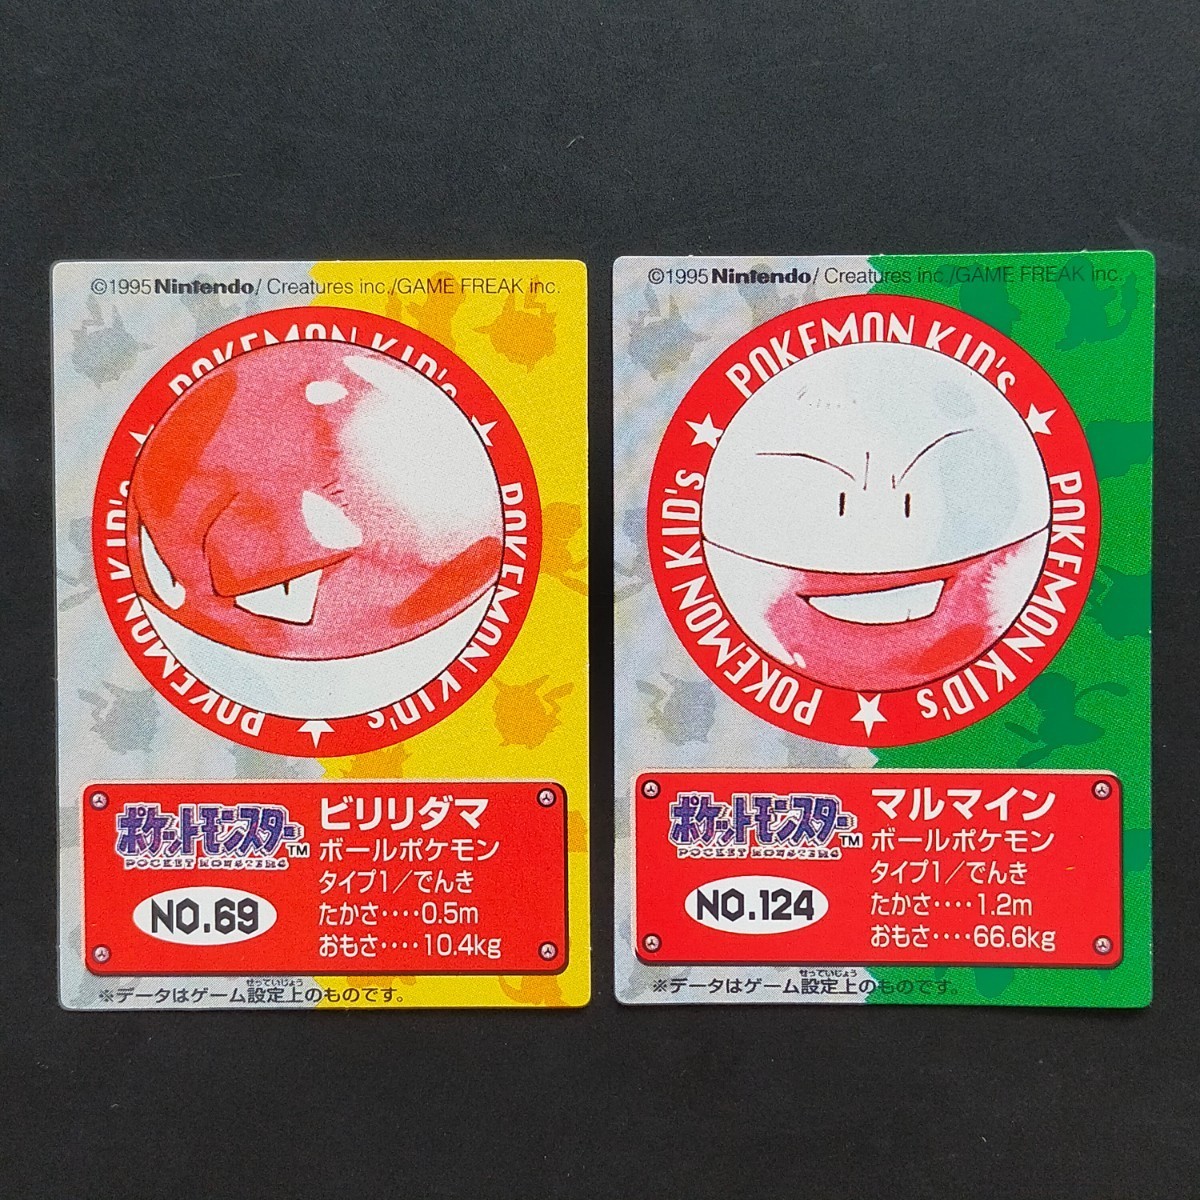 1995年初期 ビリリダマ マルマイン ポケモン キッズ カード Nintendo 「ゼニガメ リザードン フシギダネ ヒトカゲ ピカチュウ ミュウ」